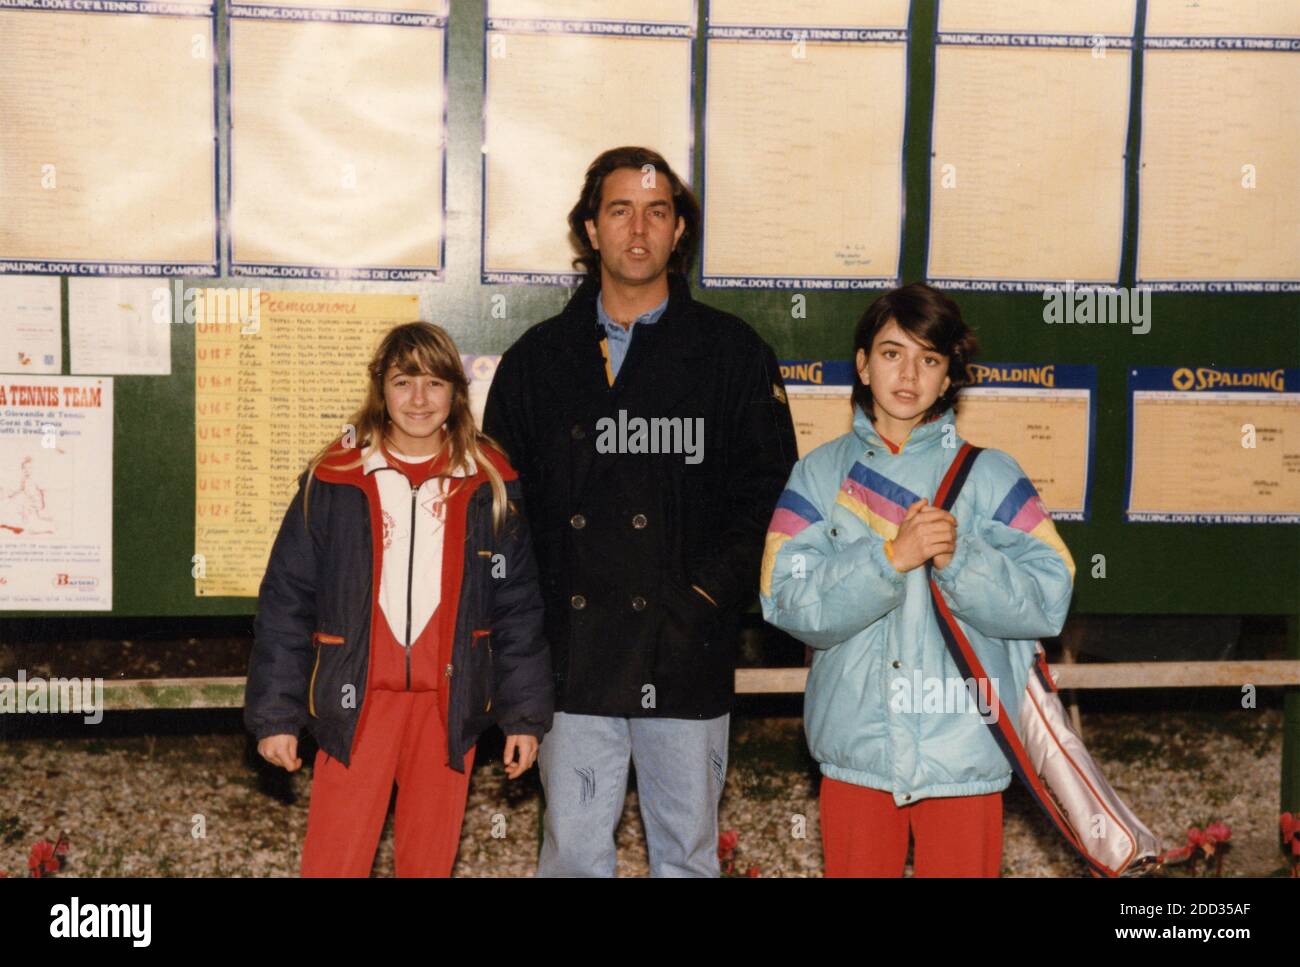 Italian tennis player Federica Fortuni (right) with Corrado Barazzutti and  Maffei, 1980s Stock Photo - Alamy